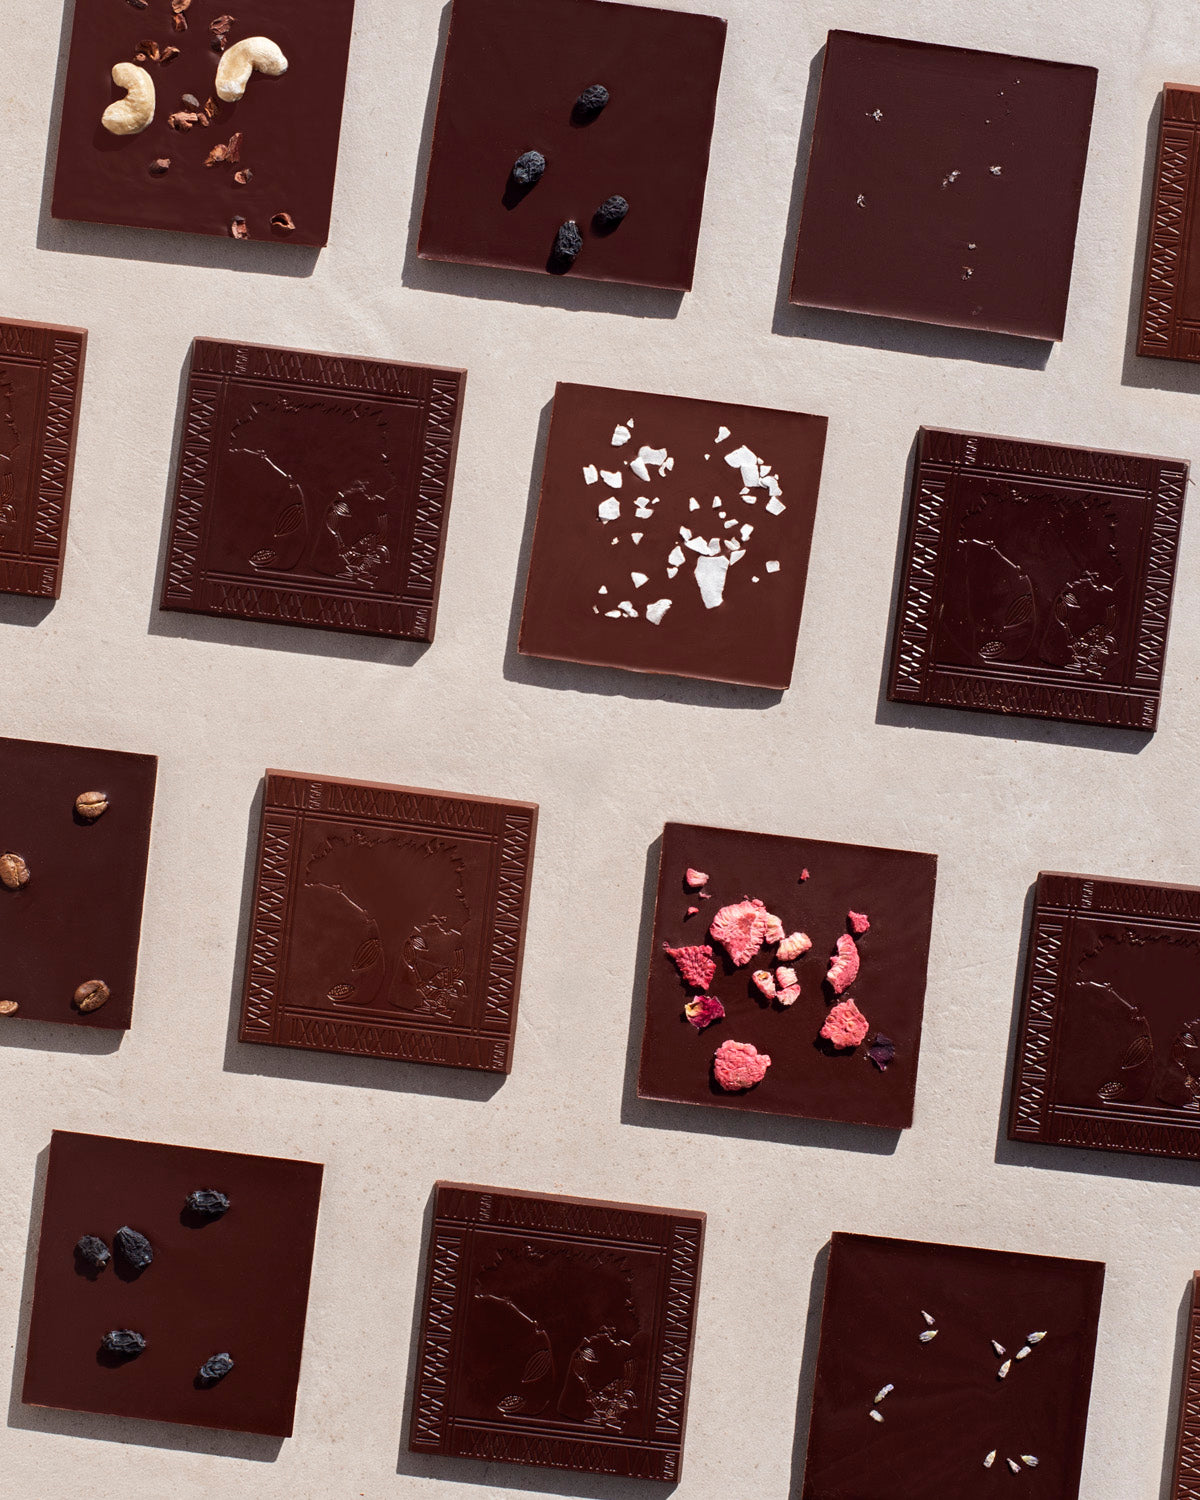 Cioccolato 80% · Lenca, El Salvador + Fiori di Lavanda raccolti in Sardegna